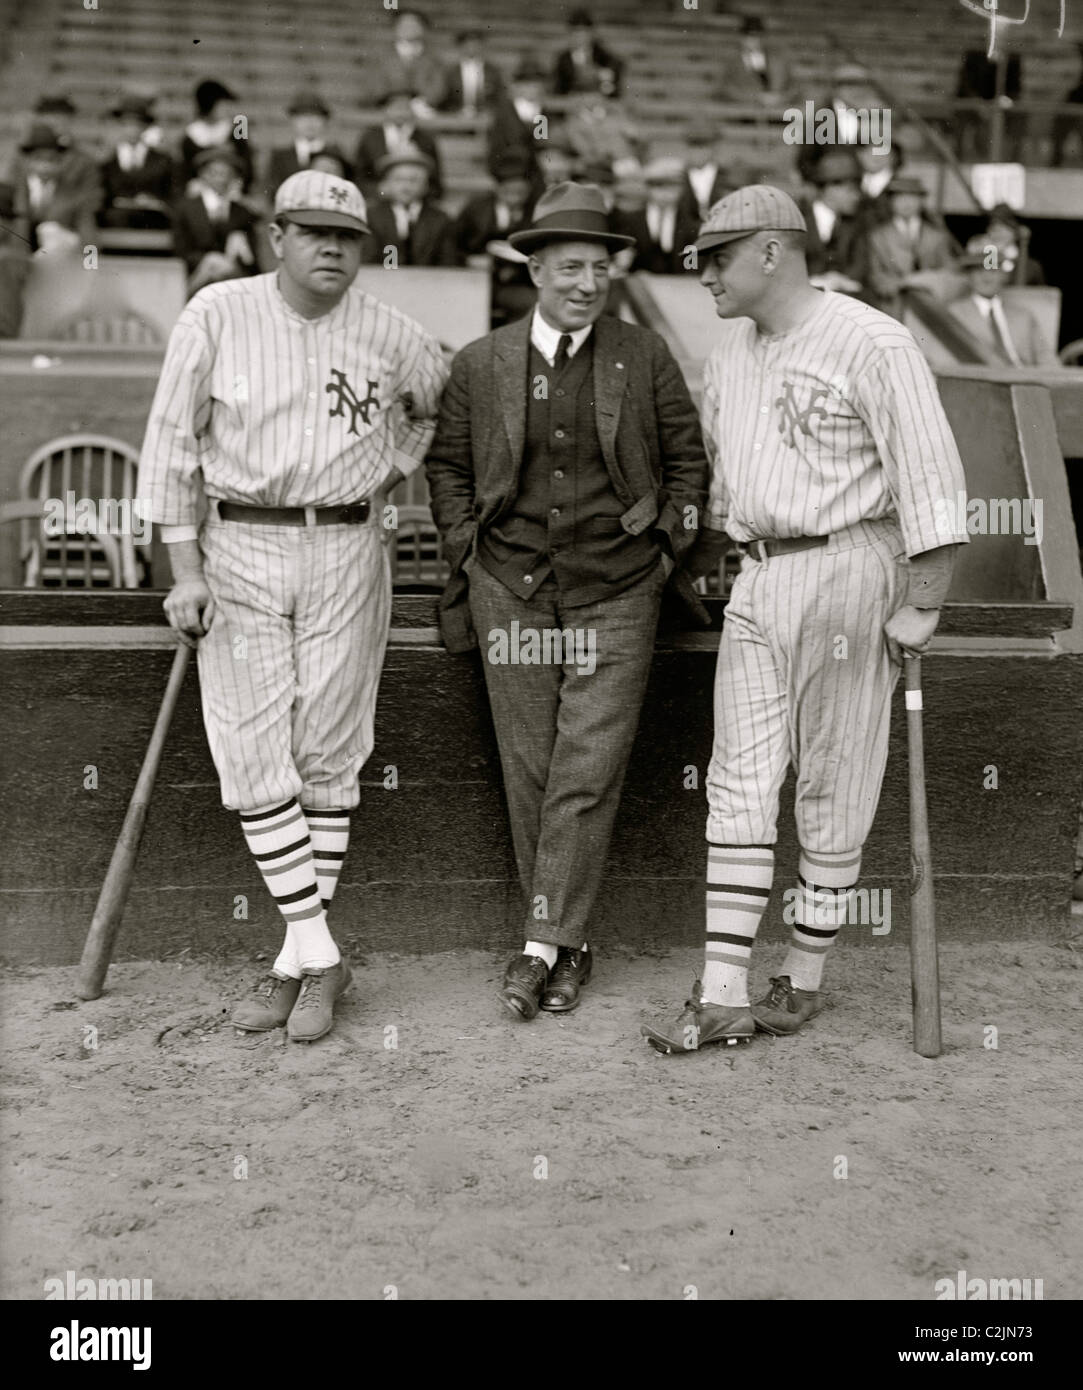 Babe Ruth & Jack Bentley in Riesen Uniformen für Schaukampf; Jack Dunn in Mitte (Baseball)] Stockfoto